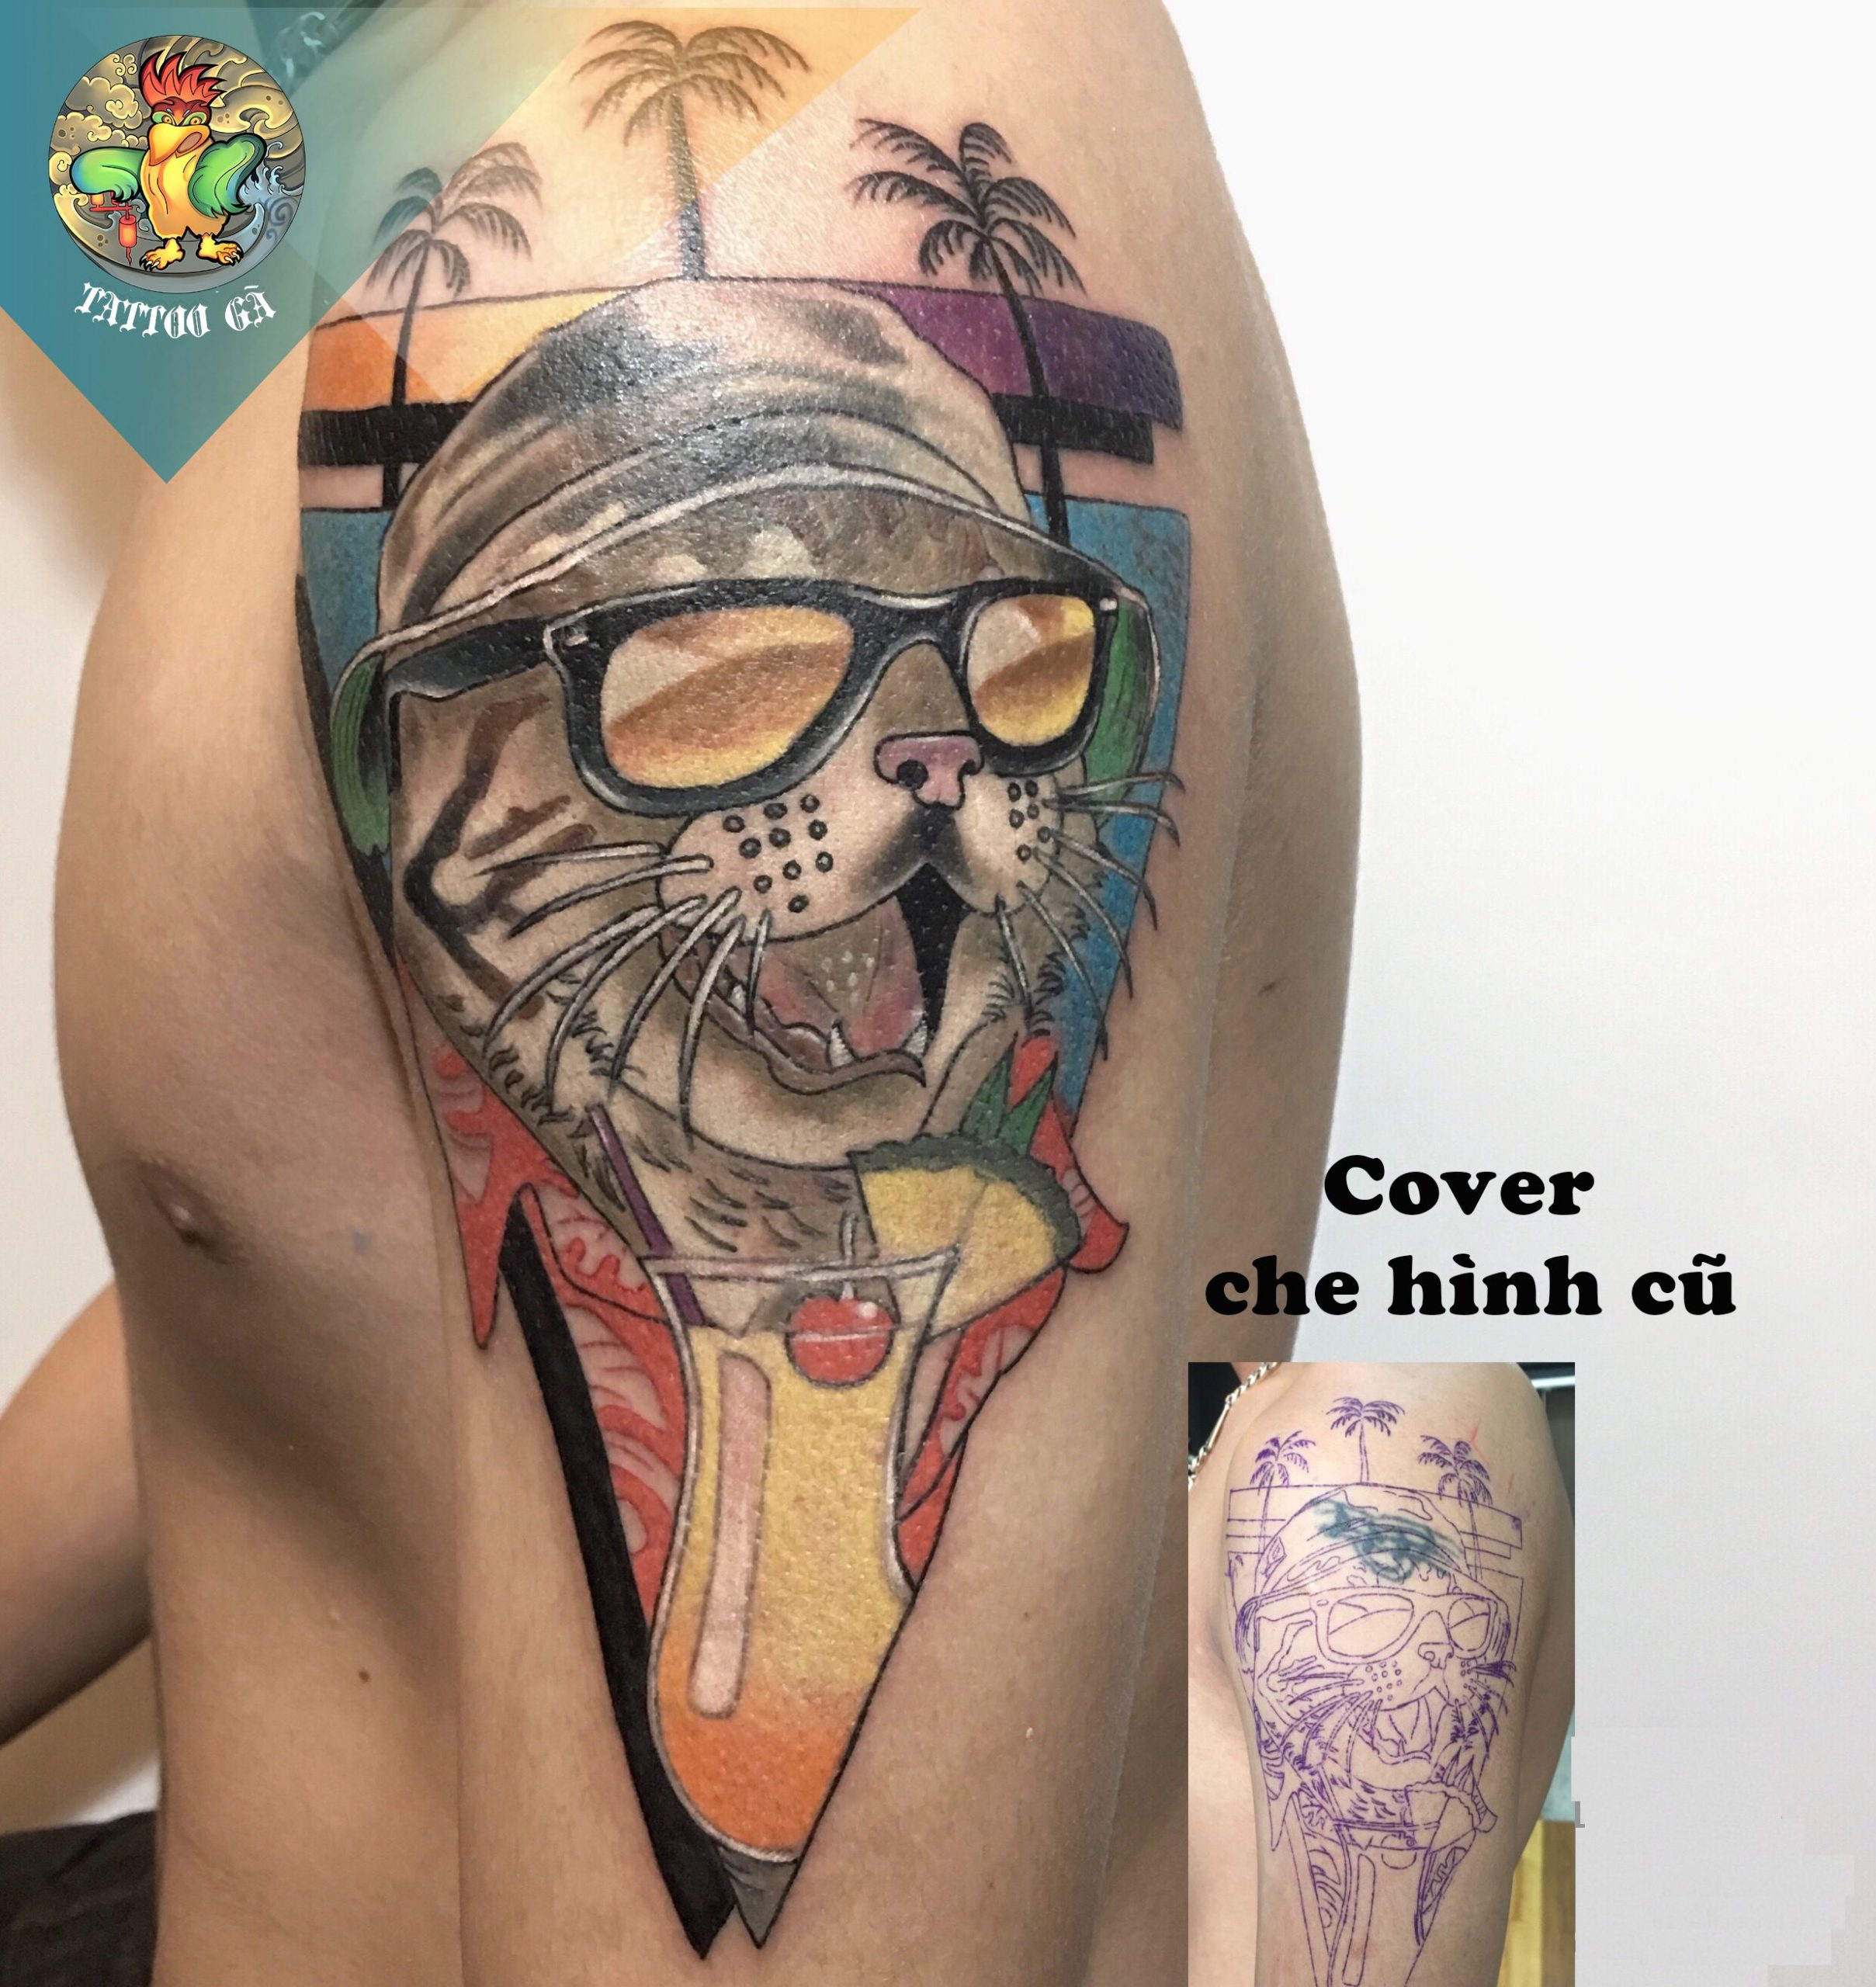 Cover Up Tattoo  Sửa Hình Xăm Hư